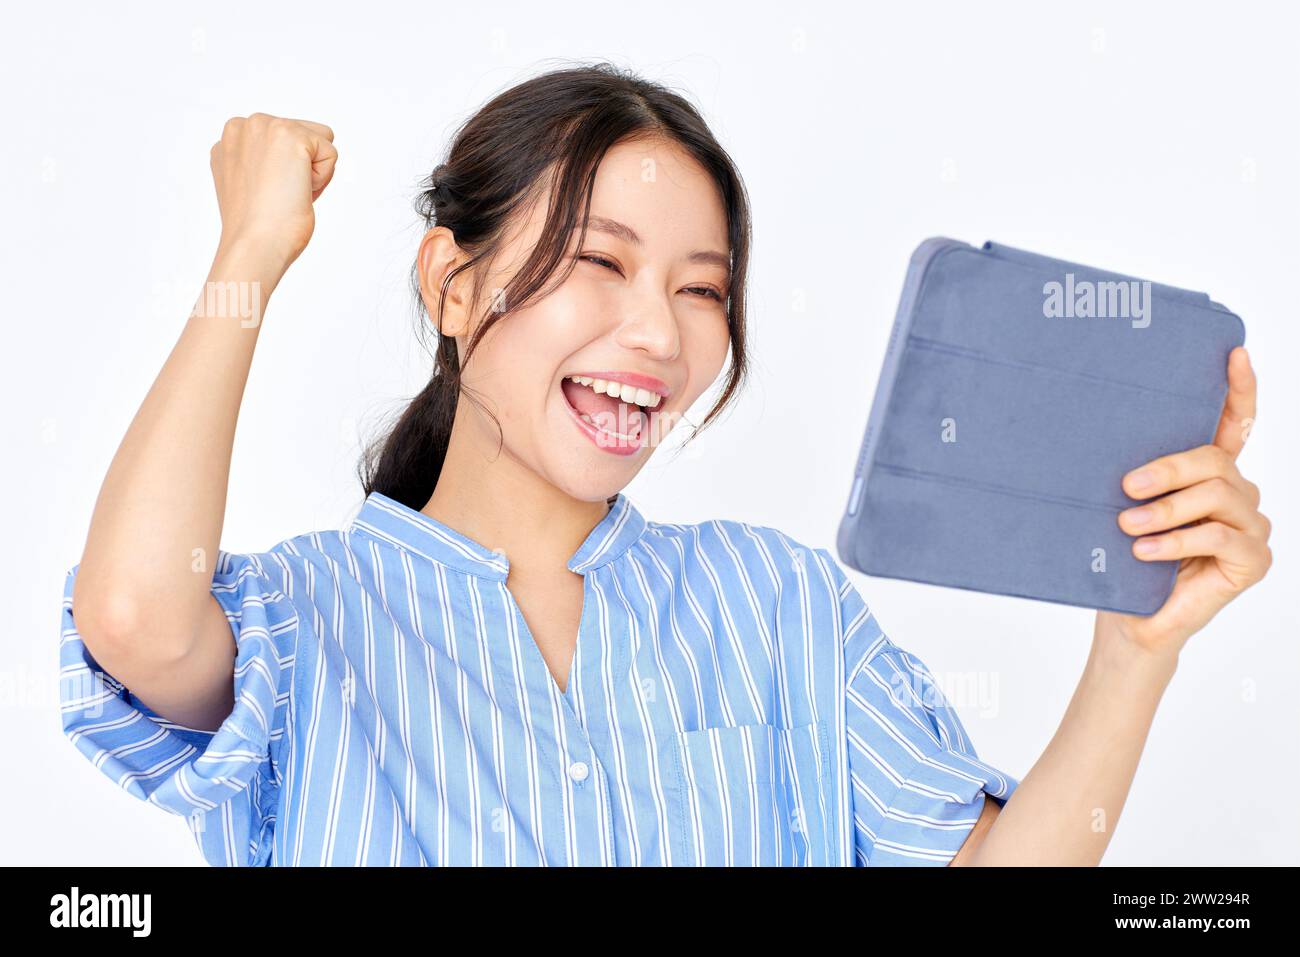 Une femme tenant une tablette et souriant Banque D'Images